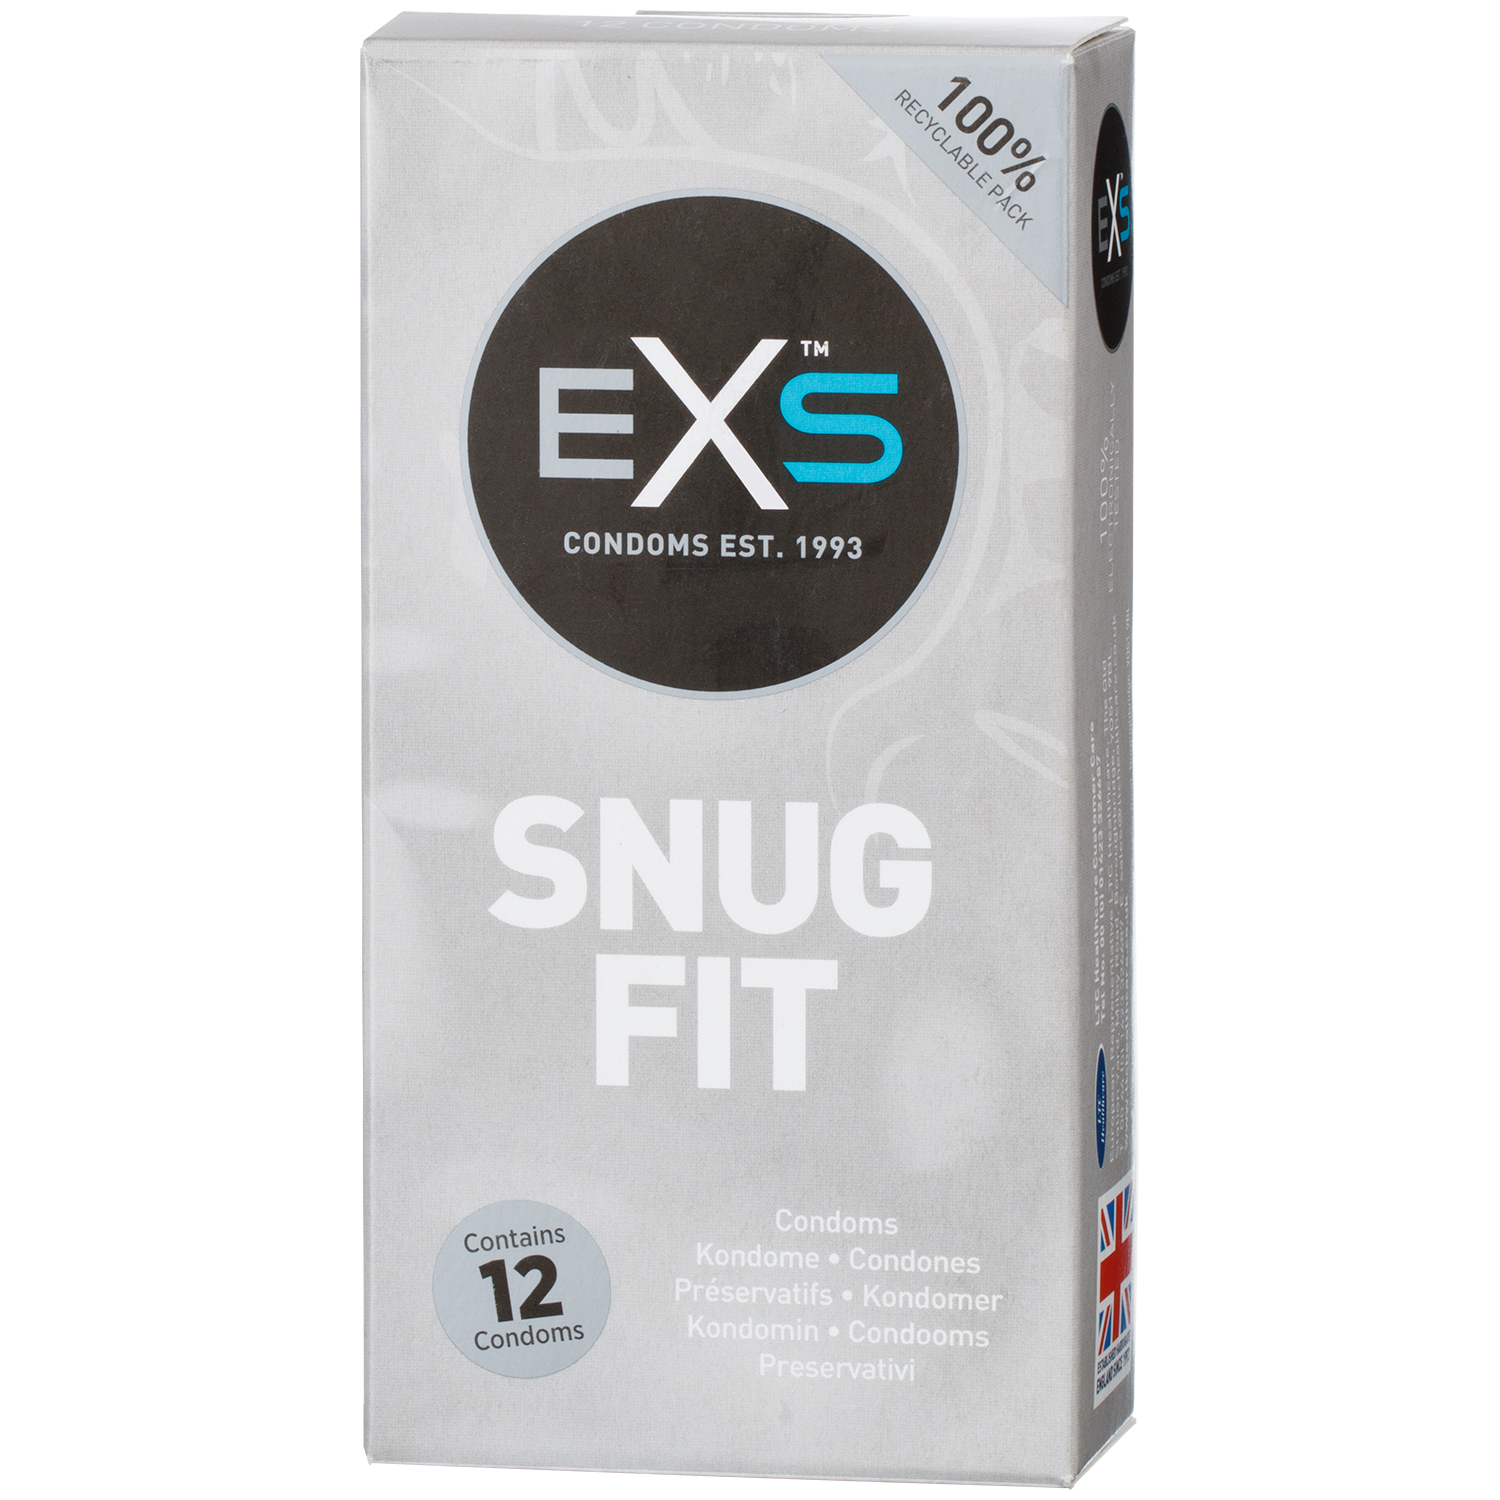 EXS Snug Fit Kondomer 12 stk     - Klar